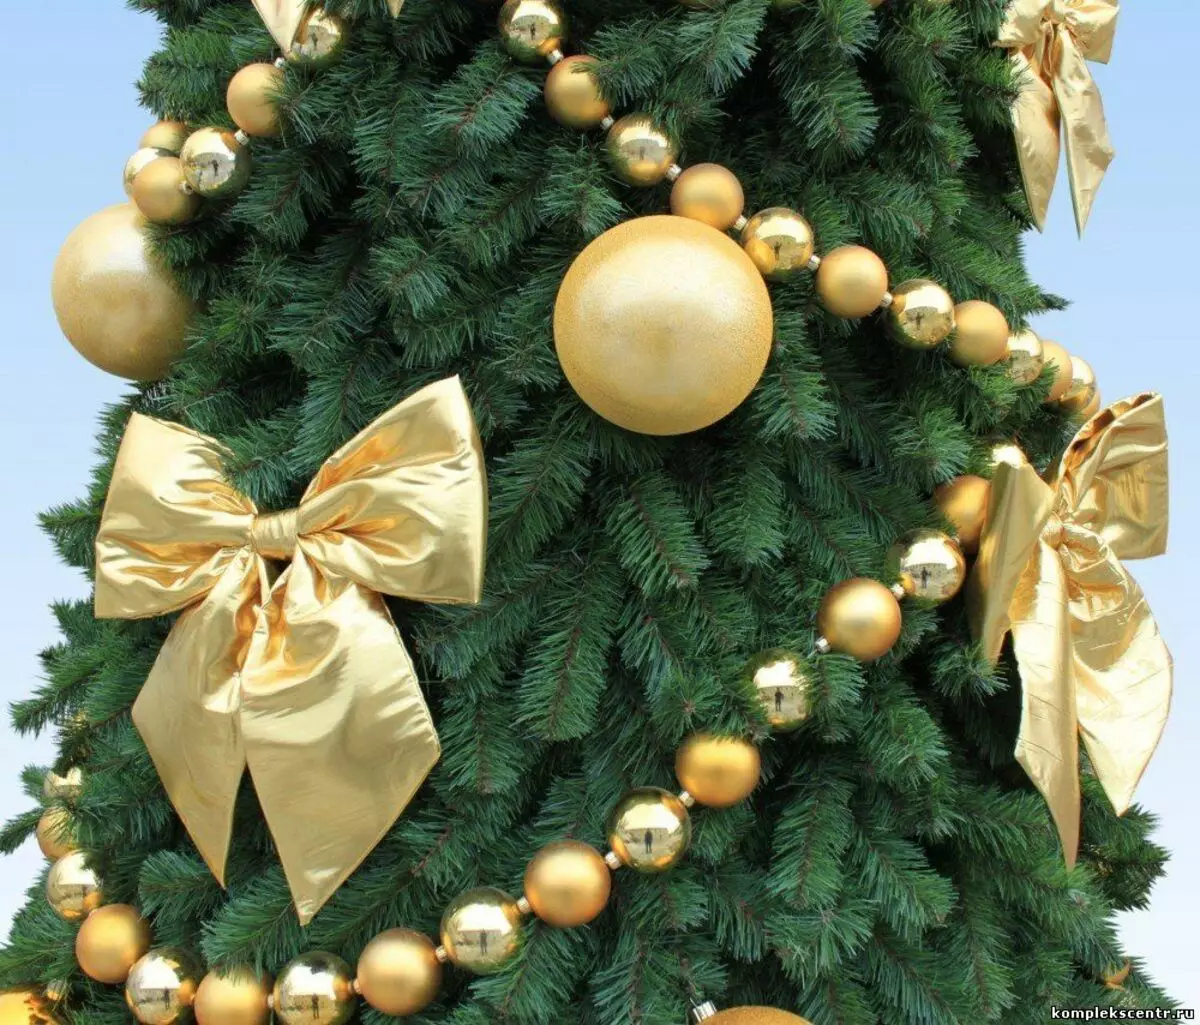 Produk Tangkal Natal sareng busur (35 Poto): Bows nganggo bal sareng kembang, sareng pita sareng banyak Natal sareng butah Natal sareng 7640_9